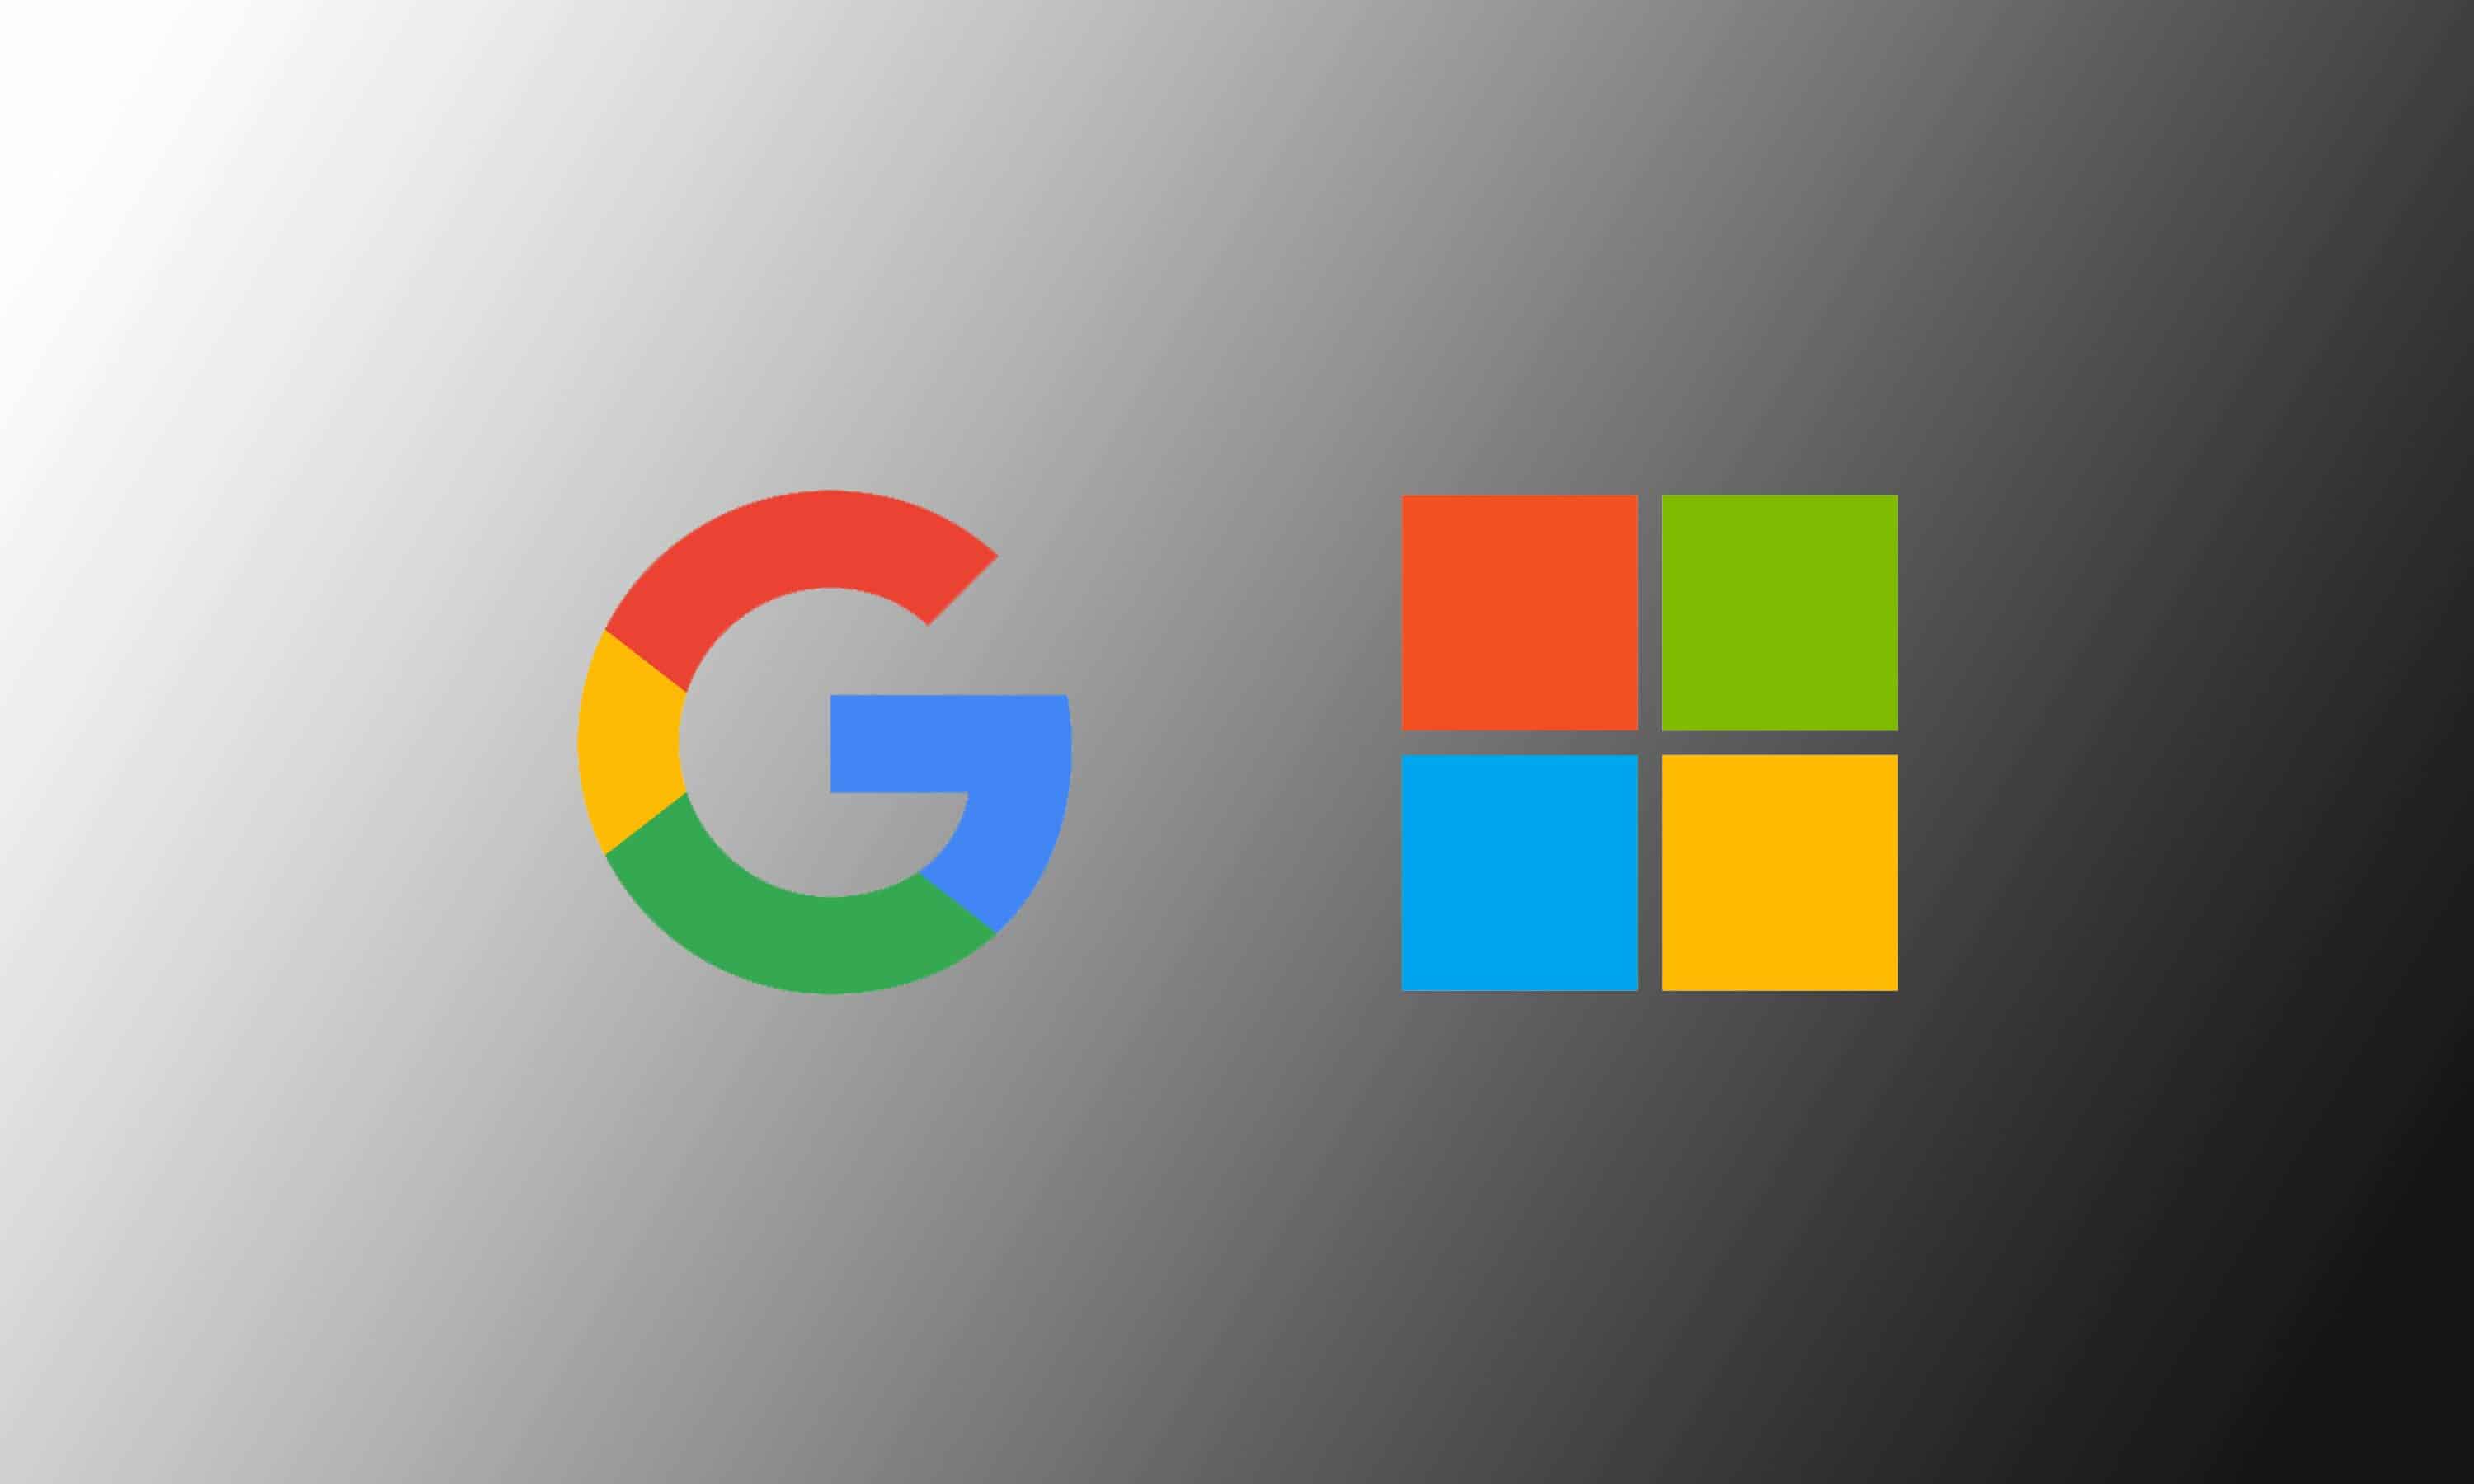 Microsoft essaie des publicités Bing, Edge plus insistantes mais a toujours du mal à rivaliser avec Google